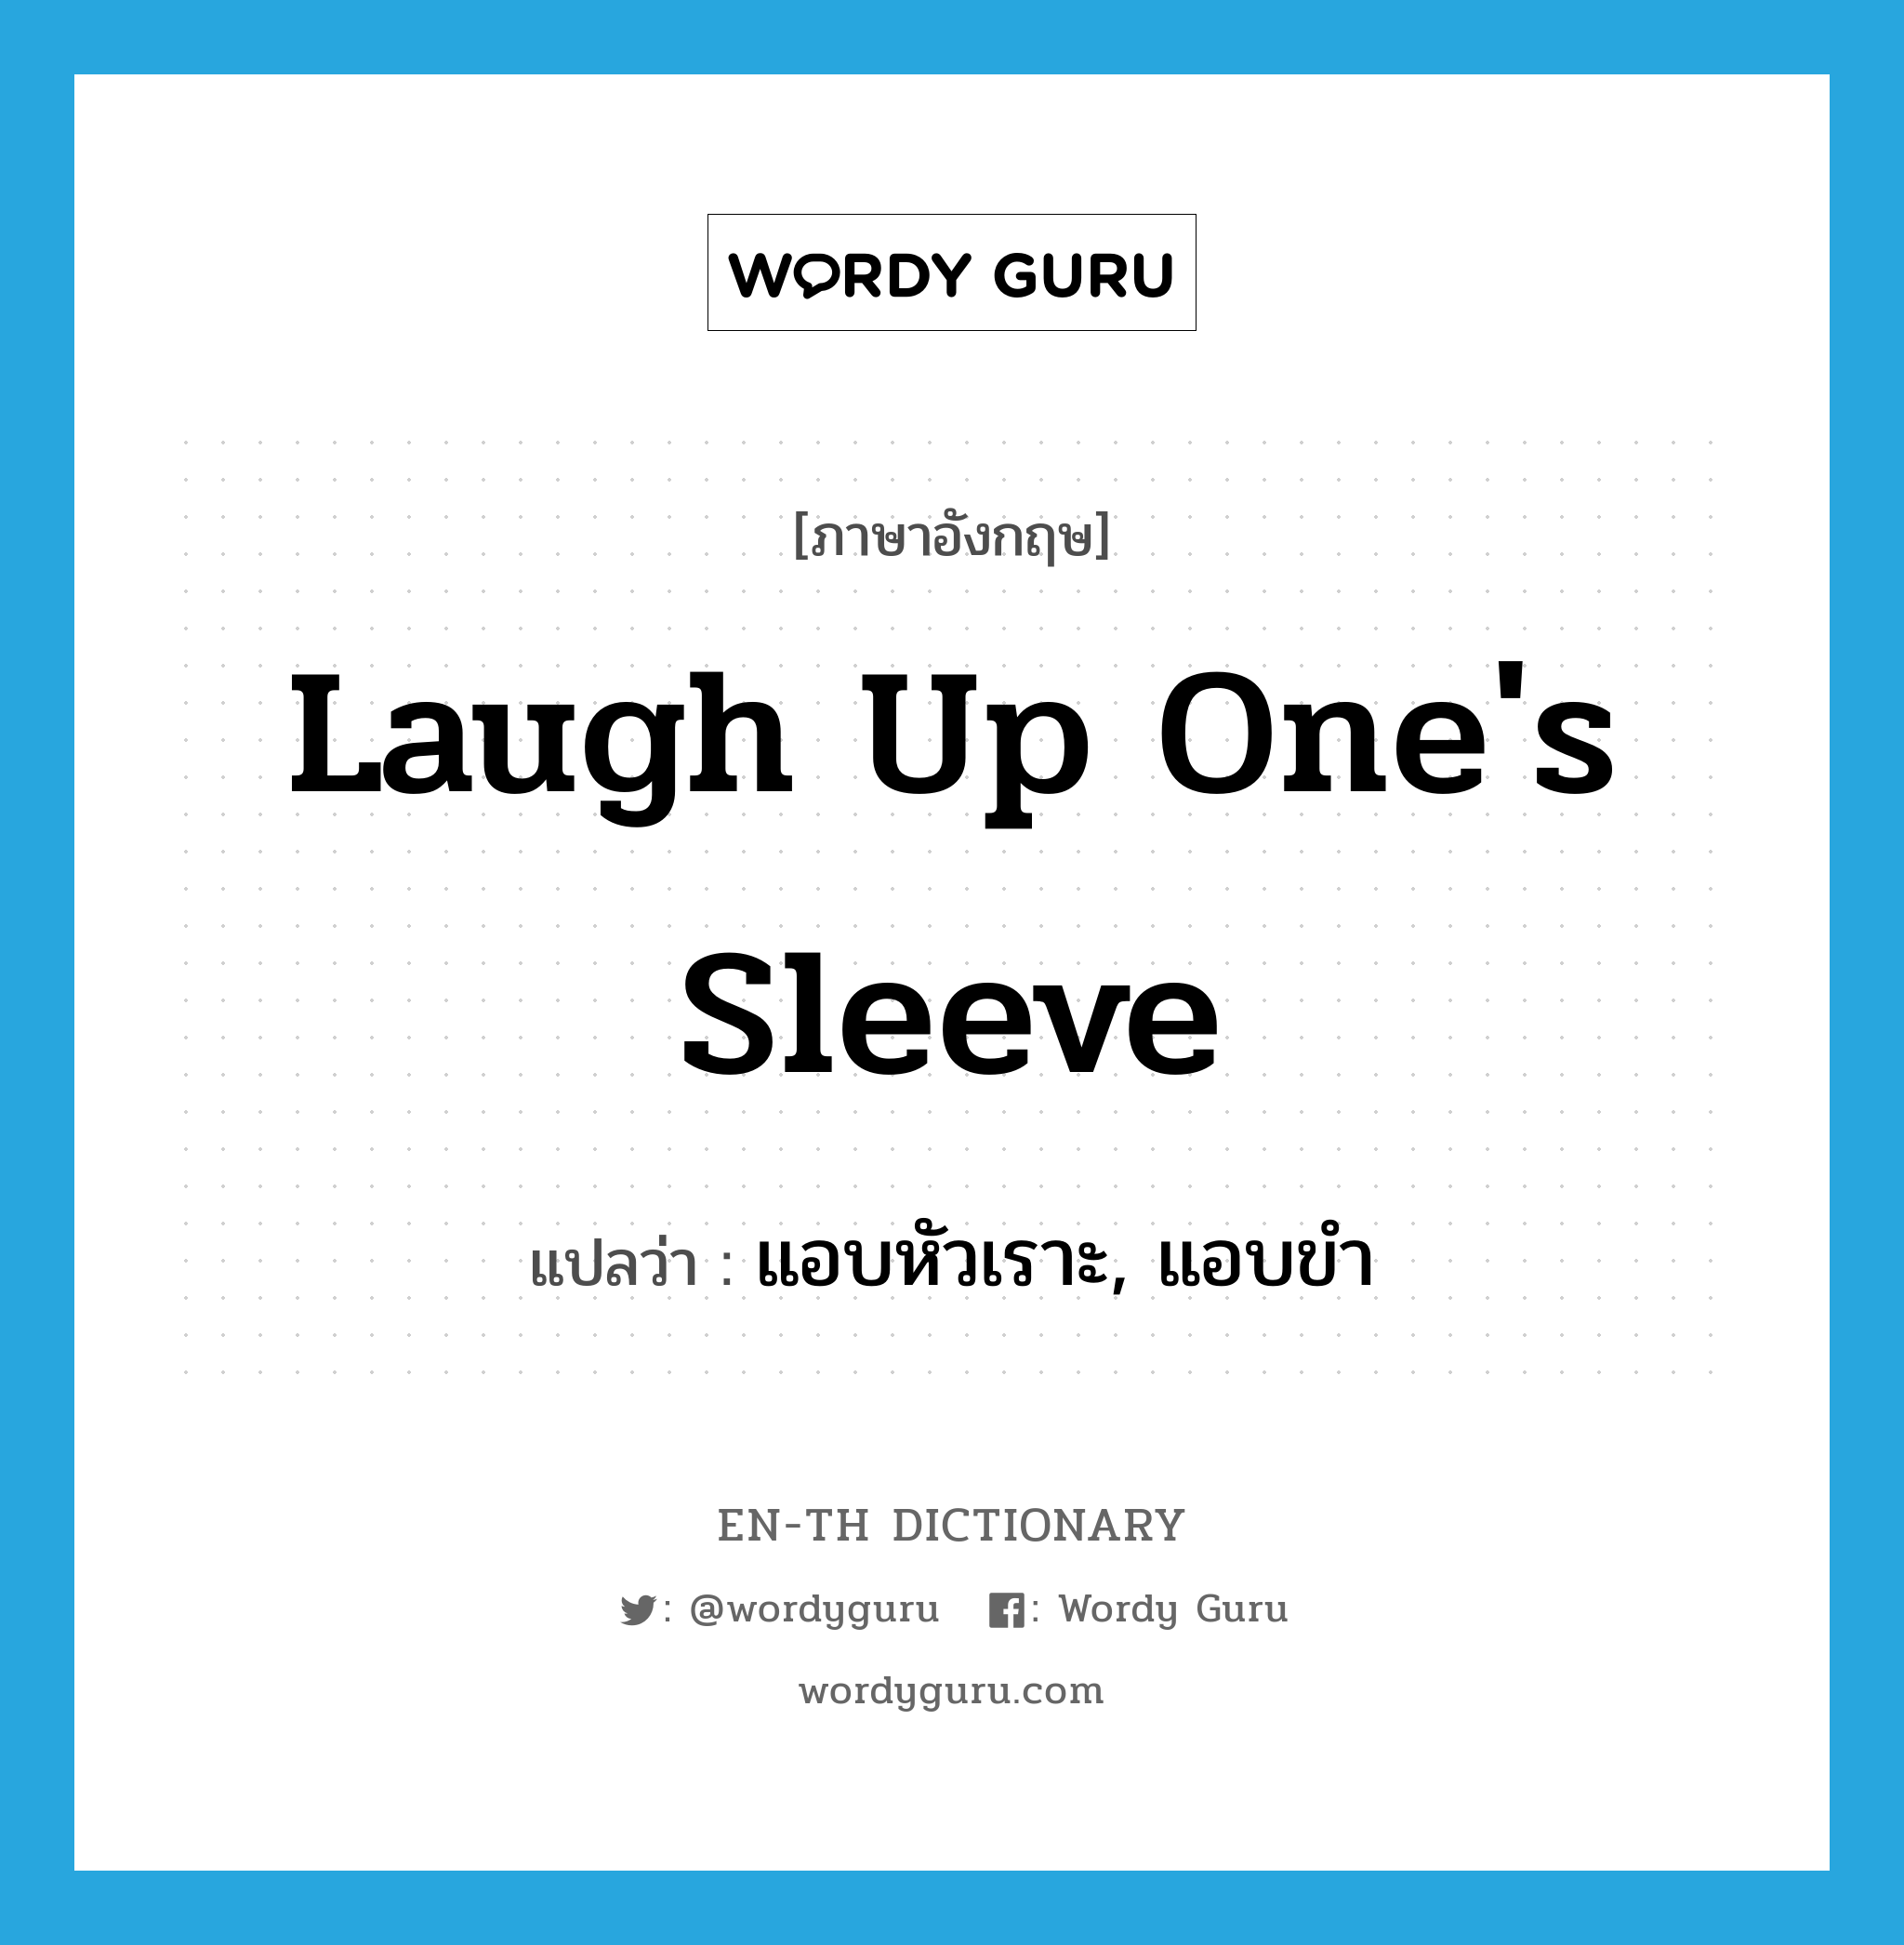 แอบหัวเราะ, แอบขำ ภาษาอังกฤษ?, คำศัพท์ภาษาอังกฤษ แอบหัวเราะ, แอบขำ แปลว่า laugh up one's sleeve ประเภท IDM หมวด IDM